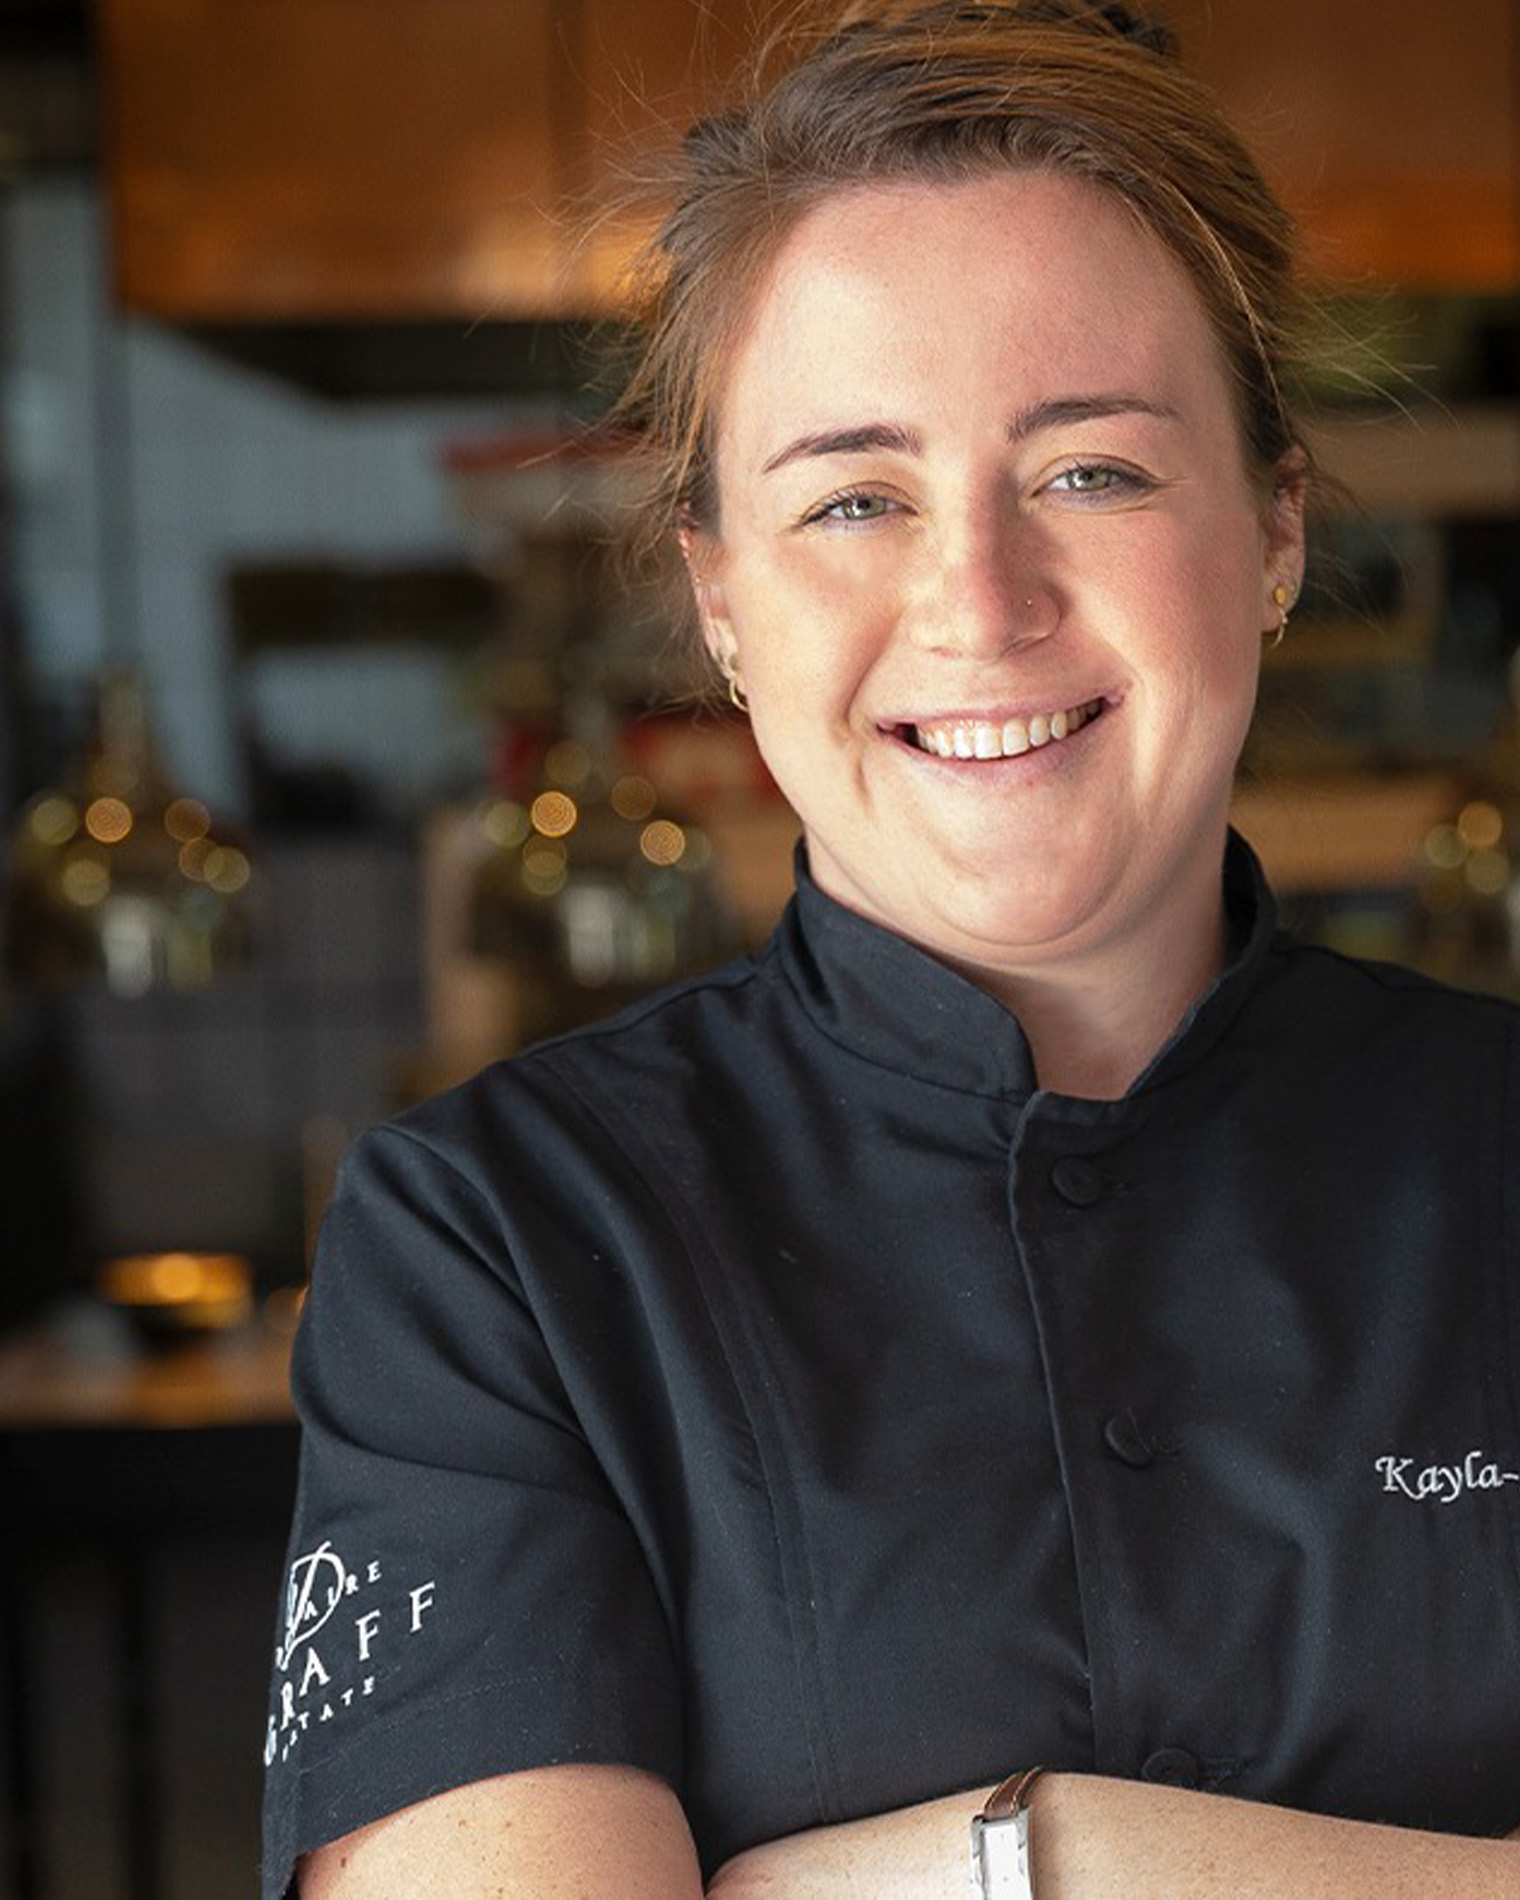 Kayla-Ann Osborn, head chef of Delaire Graff Restaurant in Stellenbosch